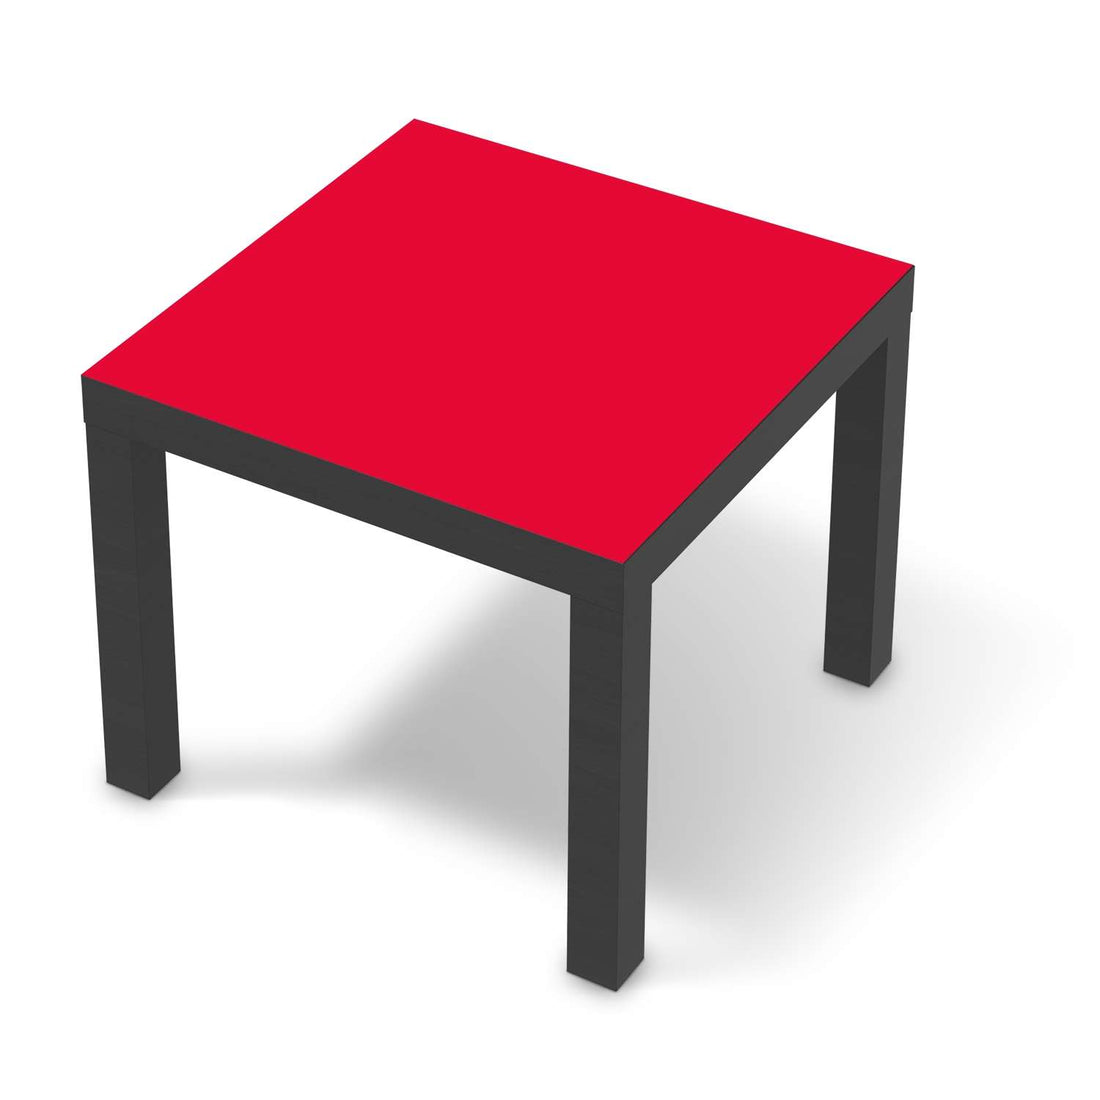 Möbelfolie Rot Light - IKEA Lack Tisch 55x55 cm - schwarz